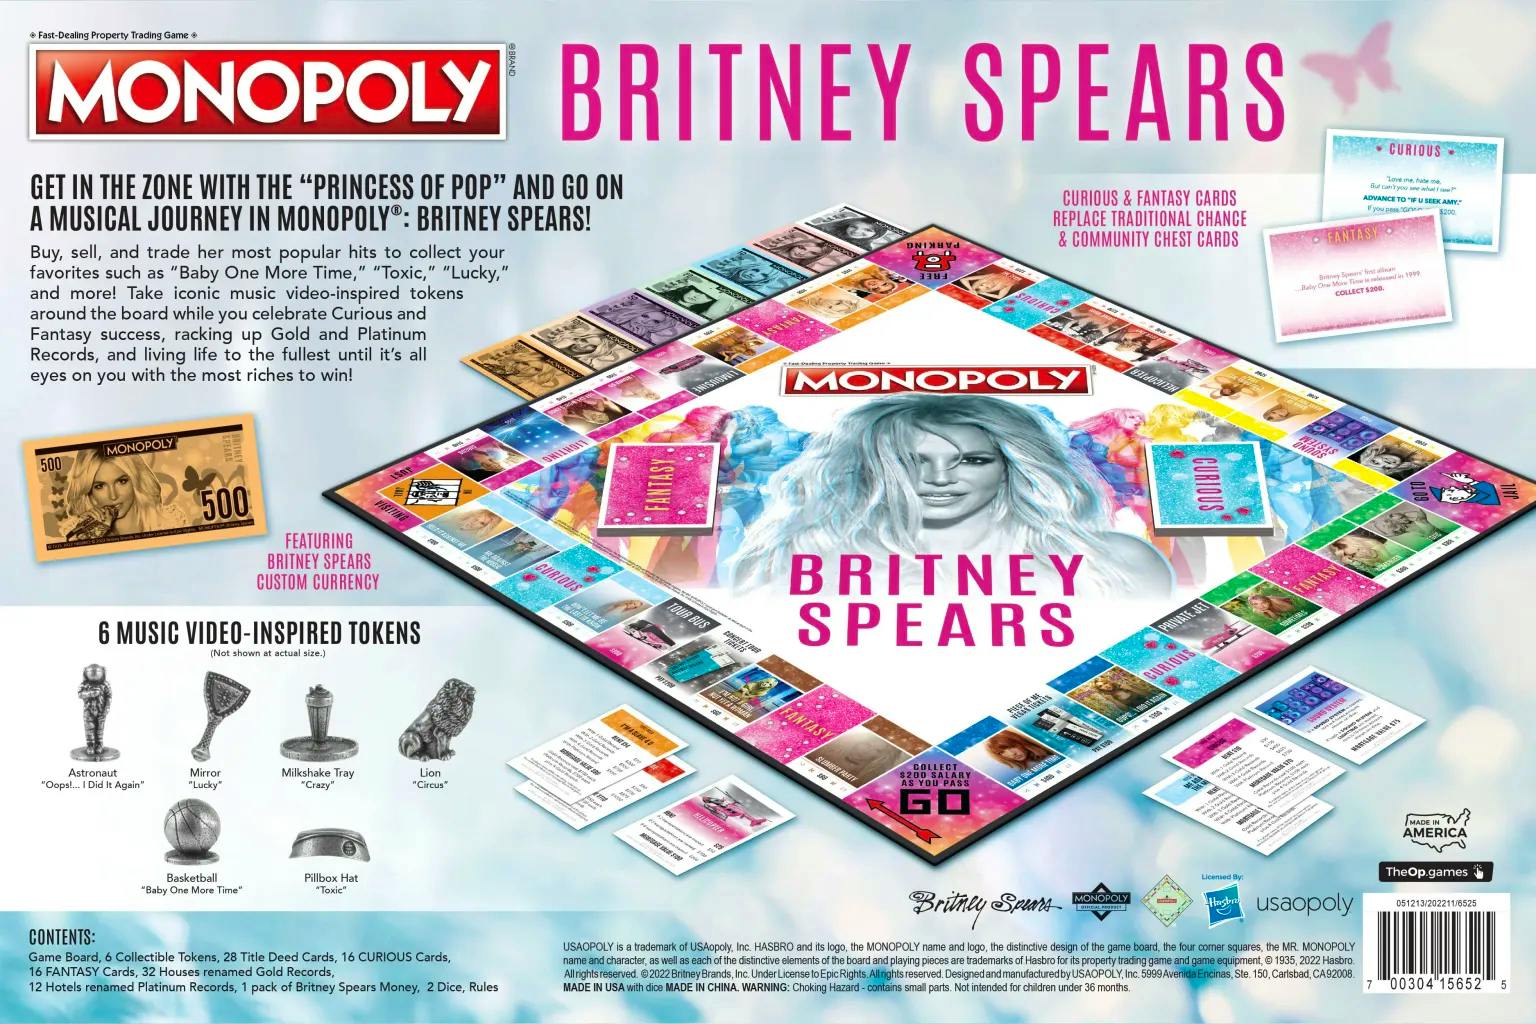 Toxique, absolument fou et pour les bébés : le Monopoly pour les fans de Spears.  (Crédit : The Op Games) 